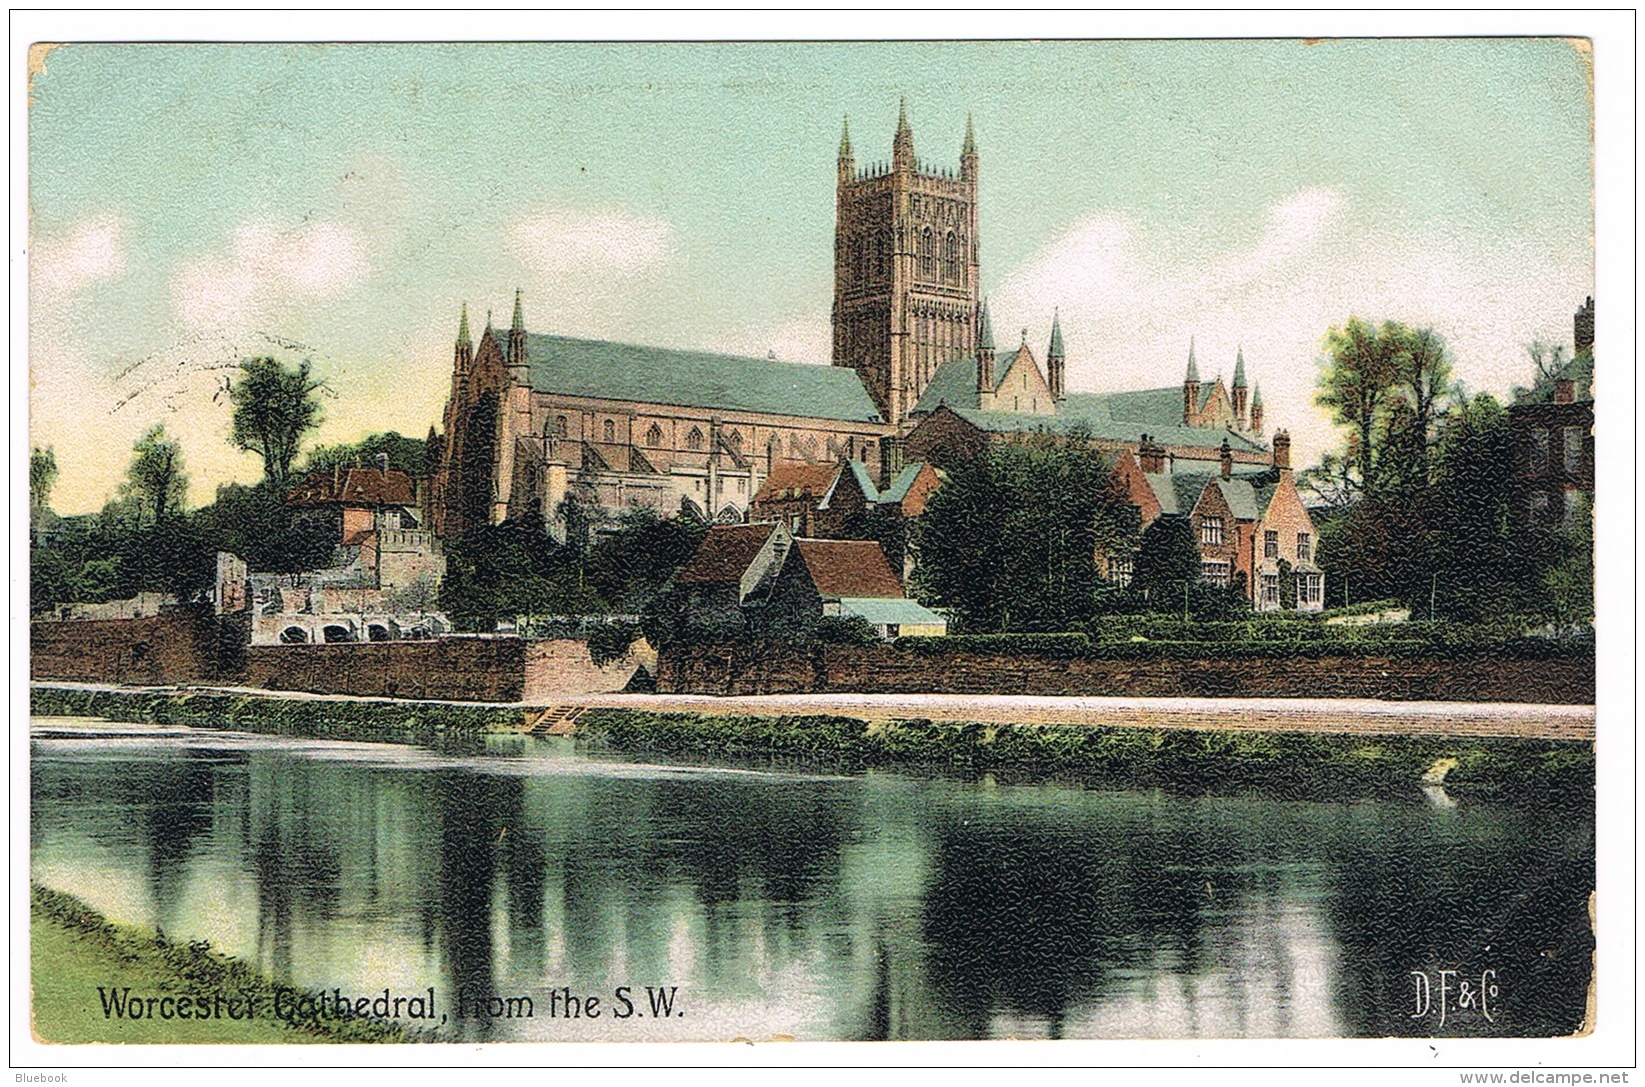 RB 1170 -  1907 Worcester Postcard - Superb Carshalton S.O. / Surrey Skeleton Postmark - Covers & Documents